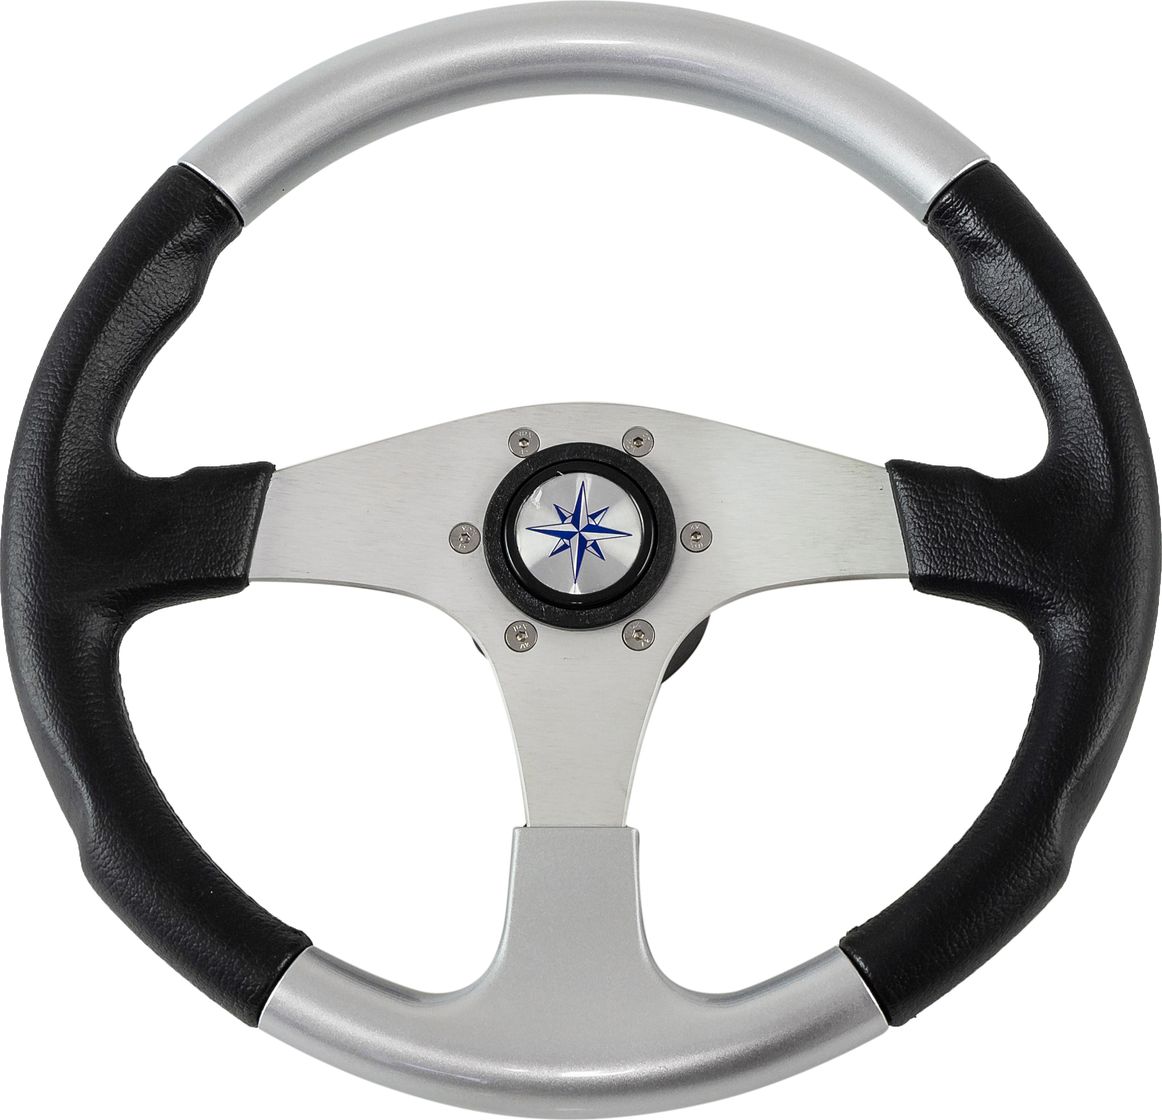 Рулевое колесо EVO MARINE 2 обод черносеребряный, спицы серебряные д. 355 мм VN850001-93 рулевое колесо evo marine 2 обод серый спицы серебряные д 355 мм vn850003 35